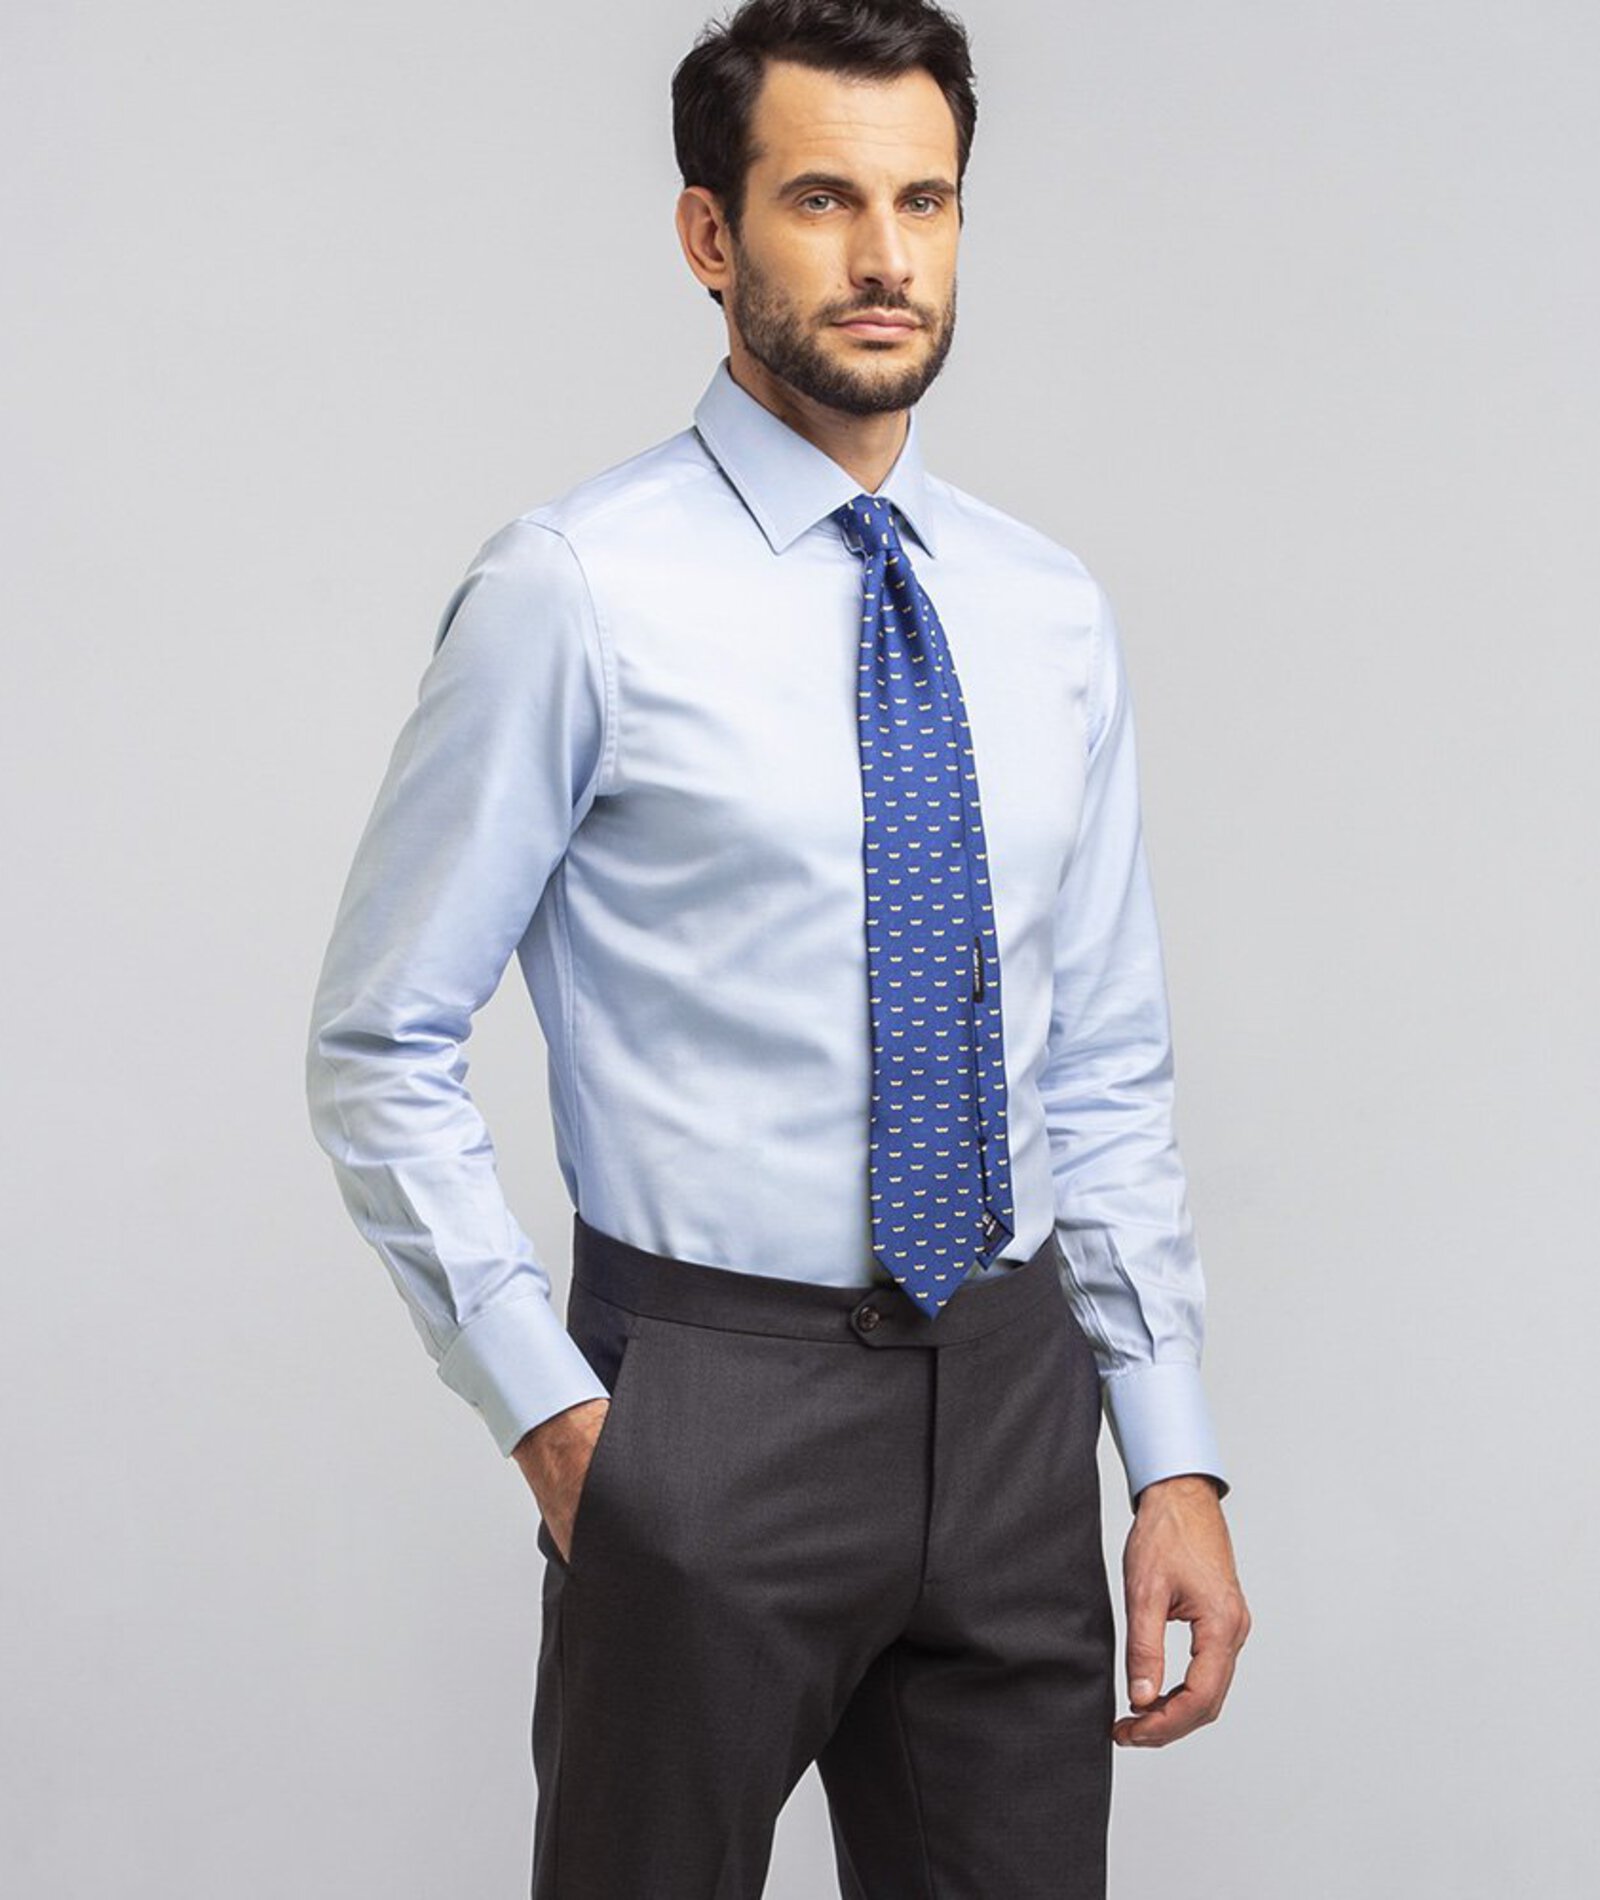 Camicia da uomo su misura, Canclini, Azzurra Oxford, Quattro Stagioni | Lanieri product